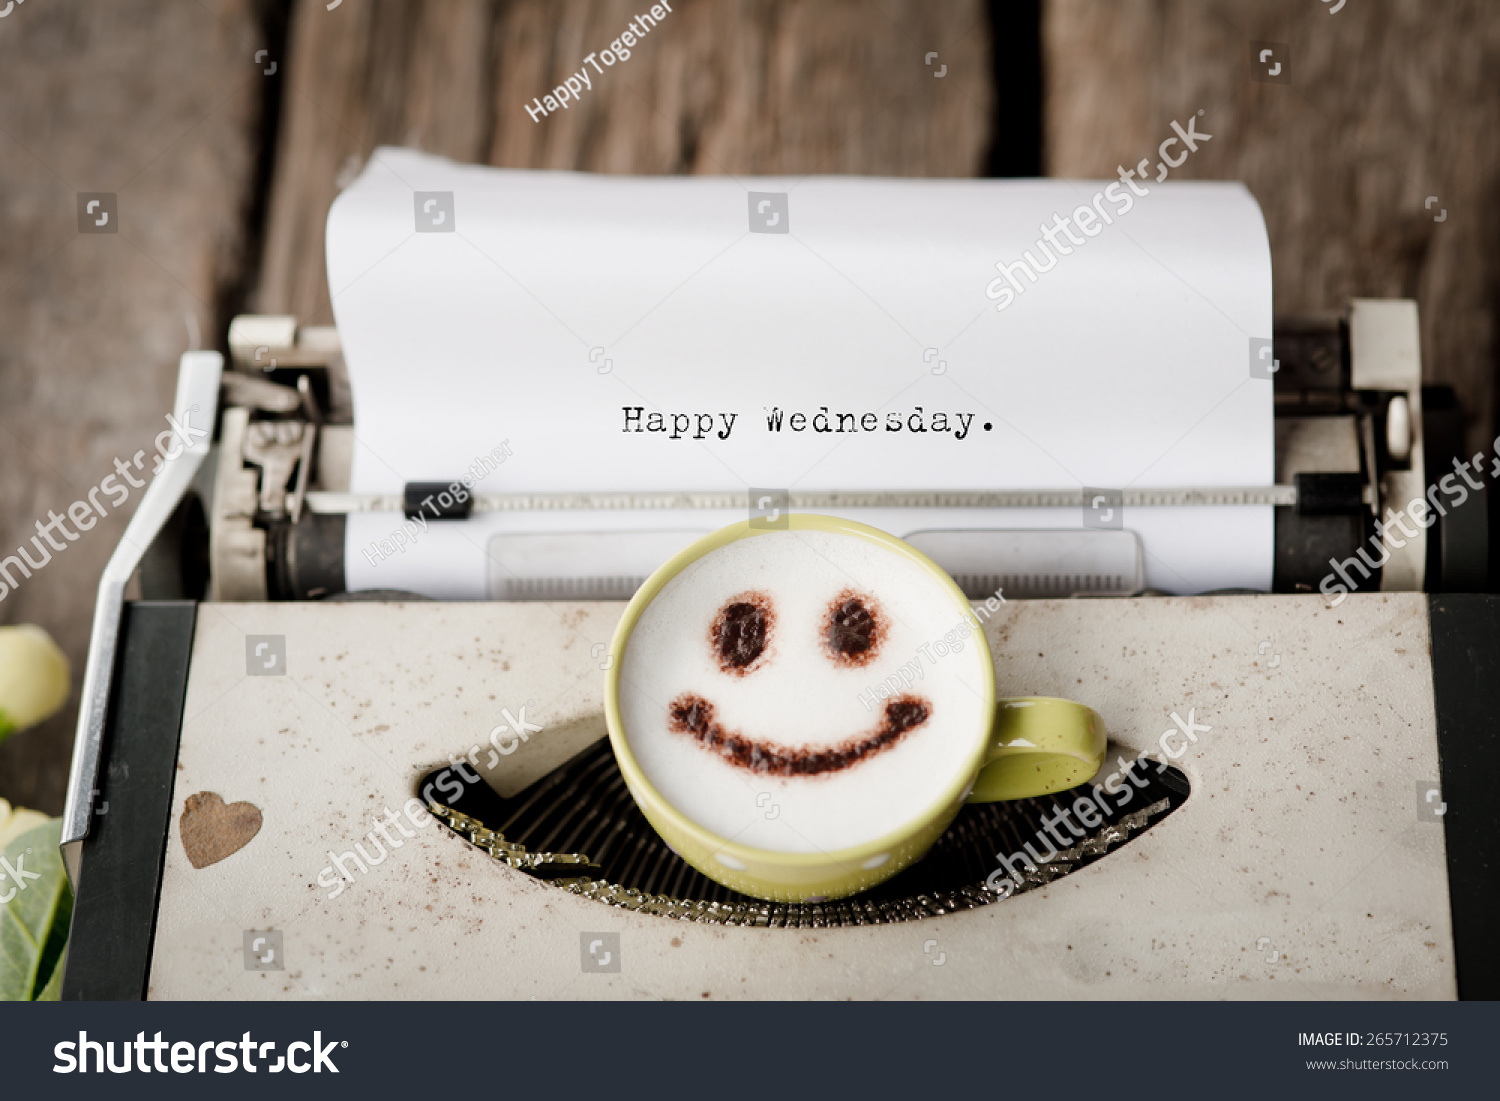 Bildergebnis für Happy Wednesday with typewriter